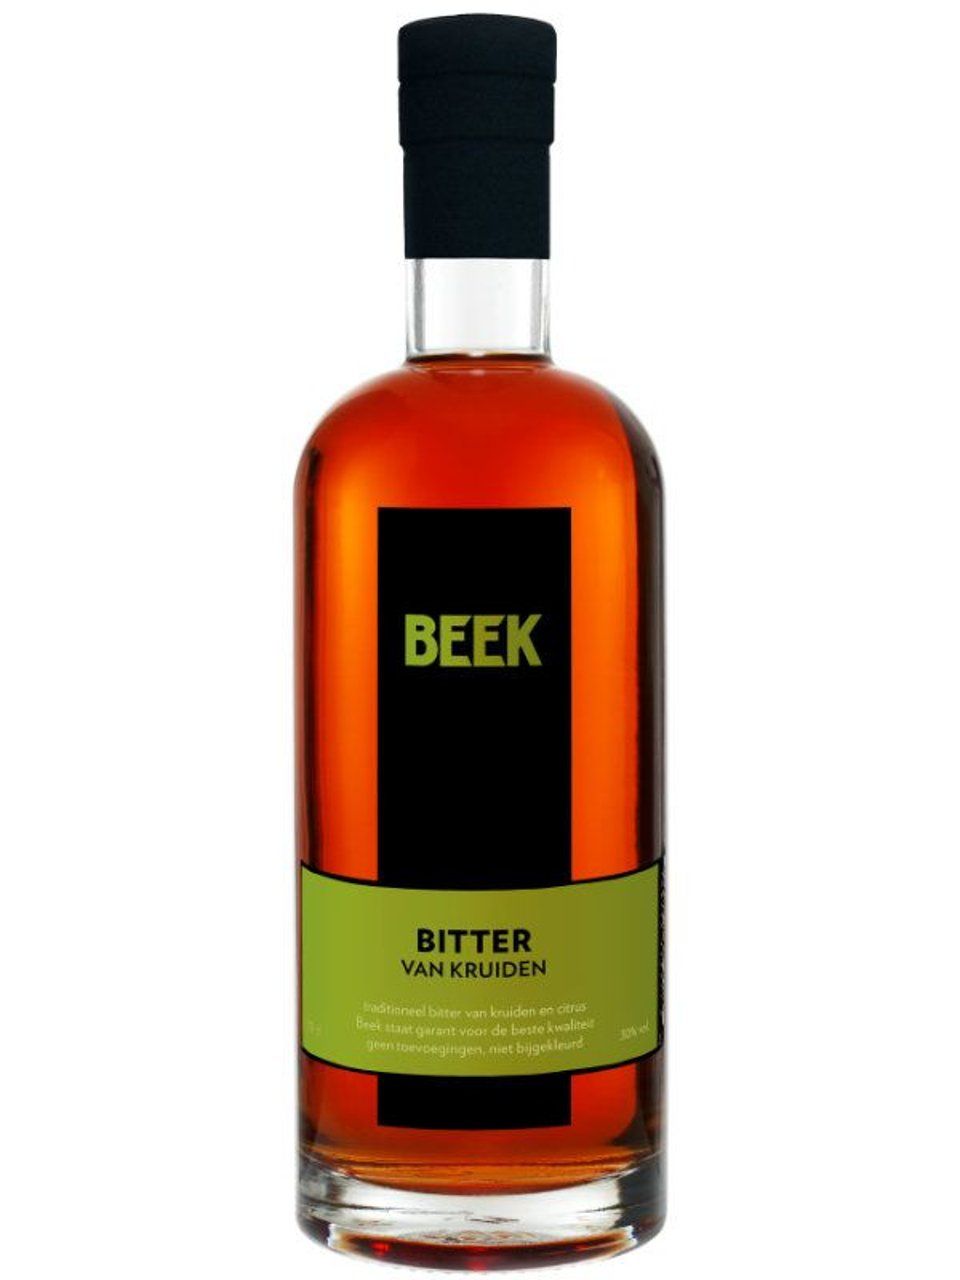 Beek Bitter 0,7 ltr